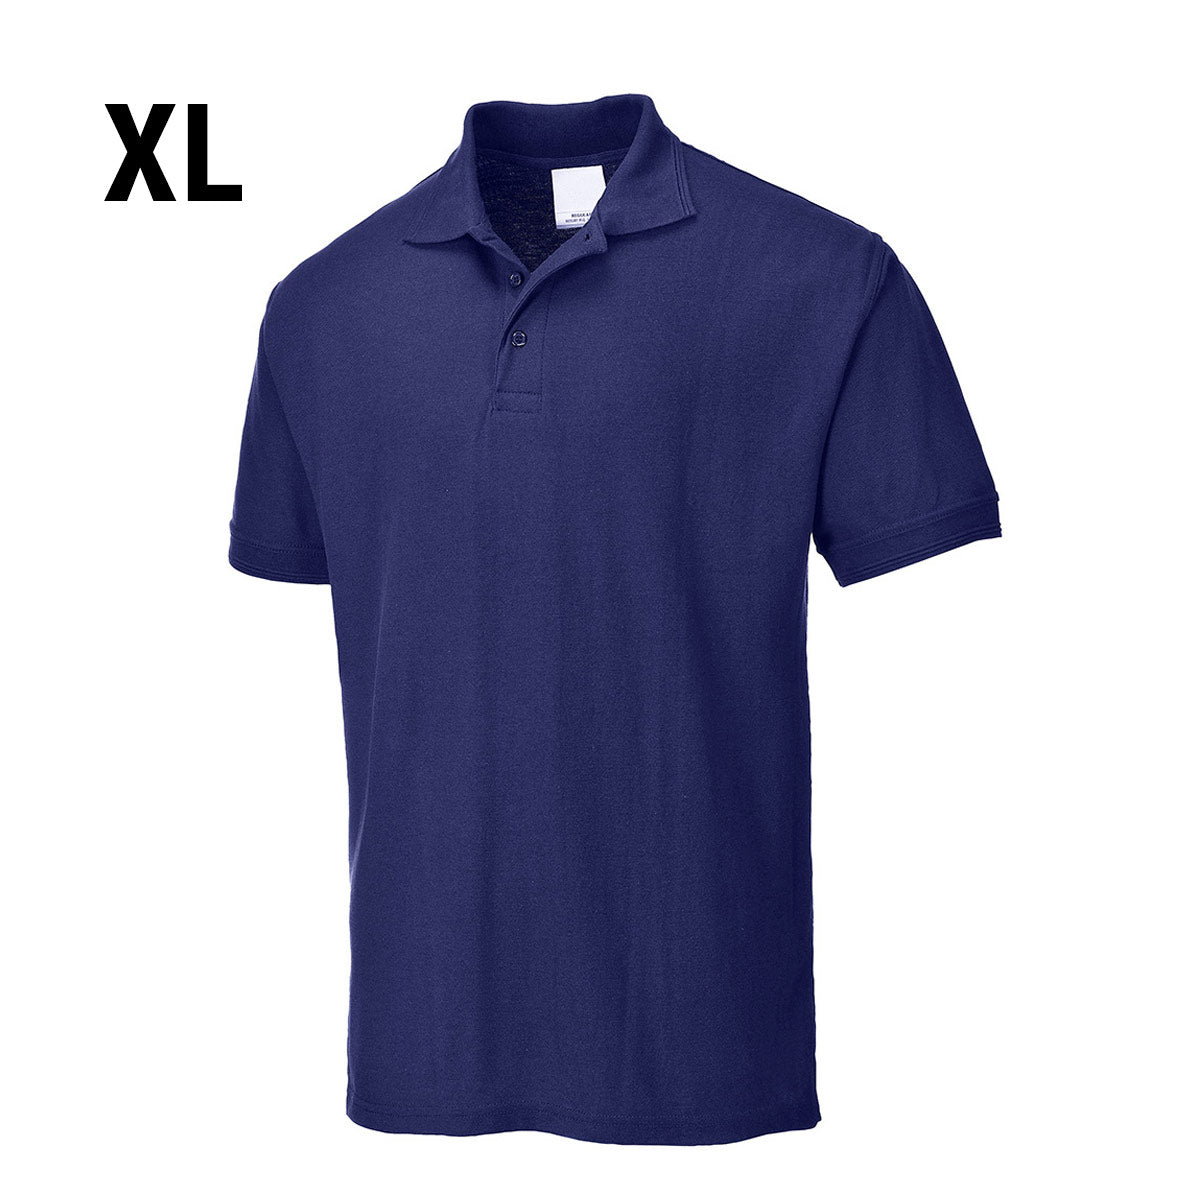 Polo shirt til mænd - Navy - Størrelse: XL